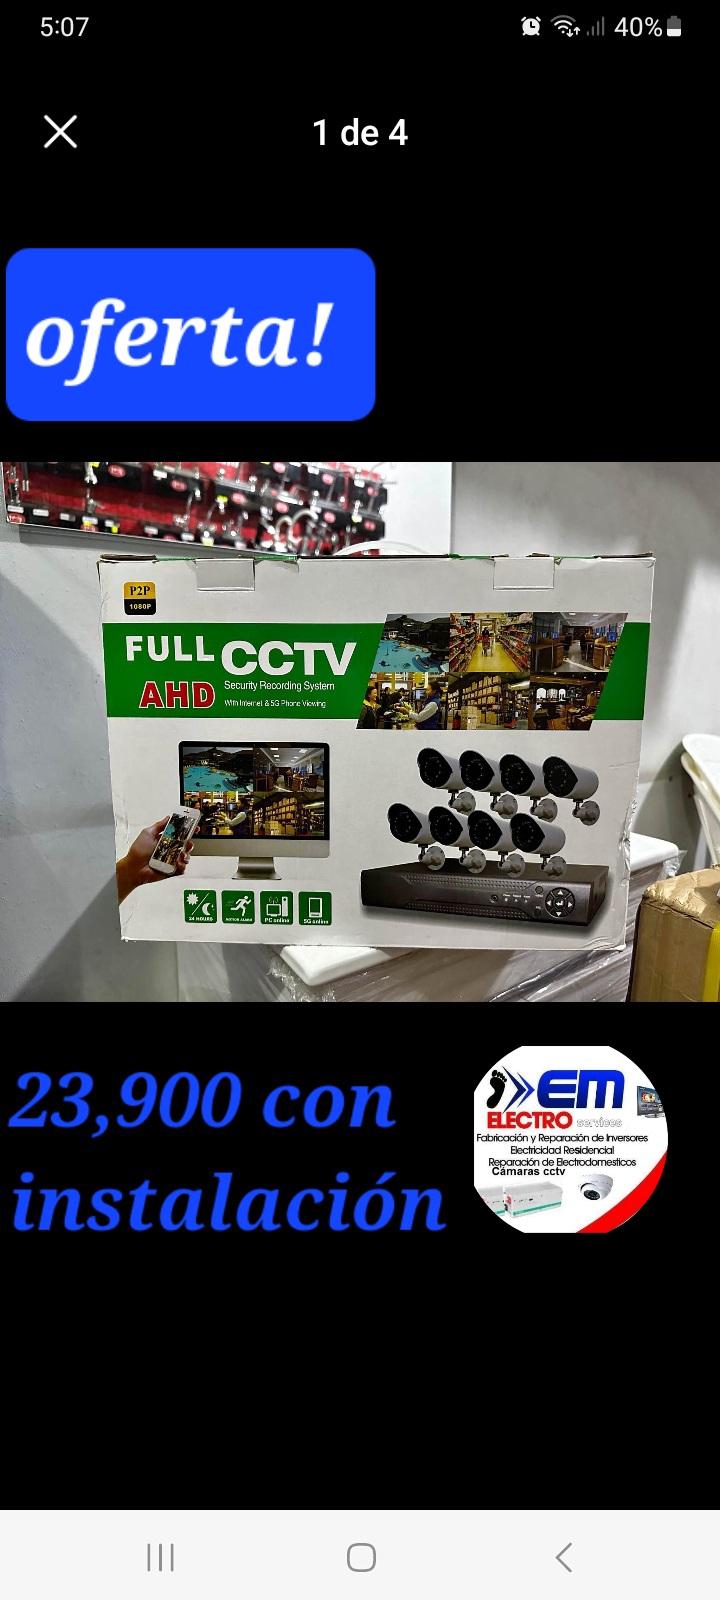 Camaras de vigilancia CCTV con instalación incluida Foto 7225801-10.jpg